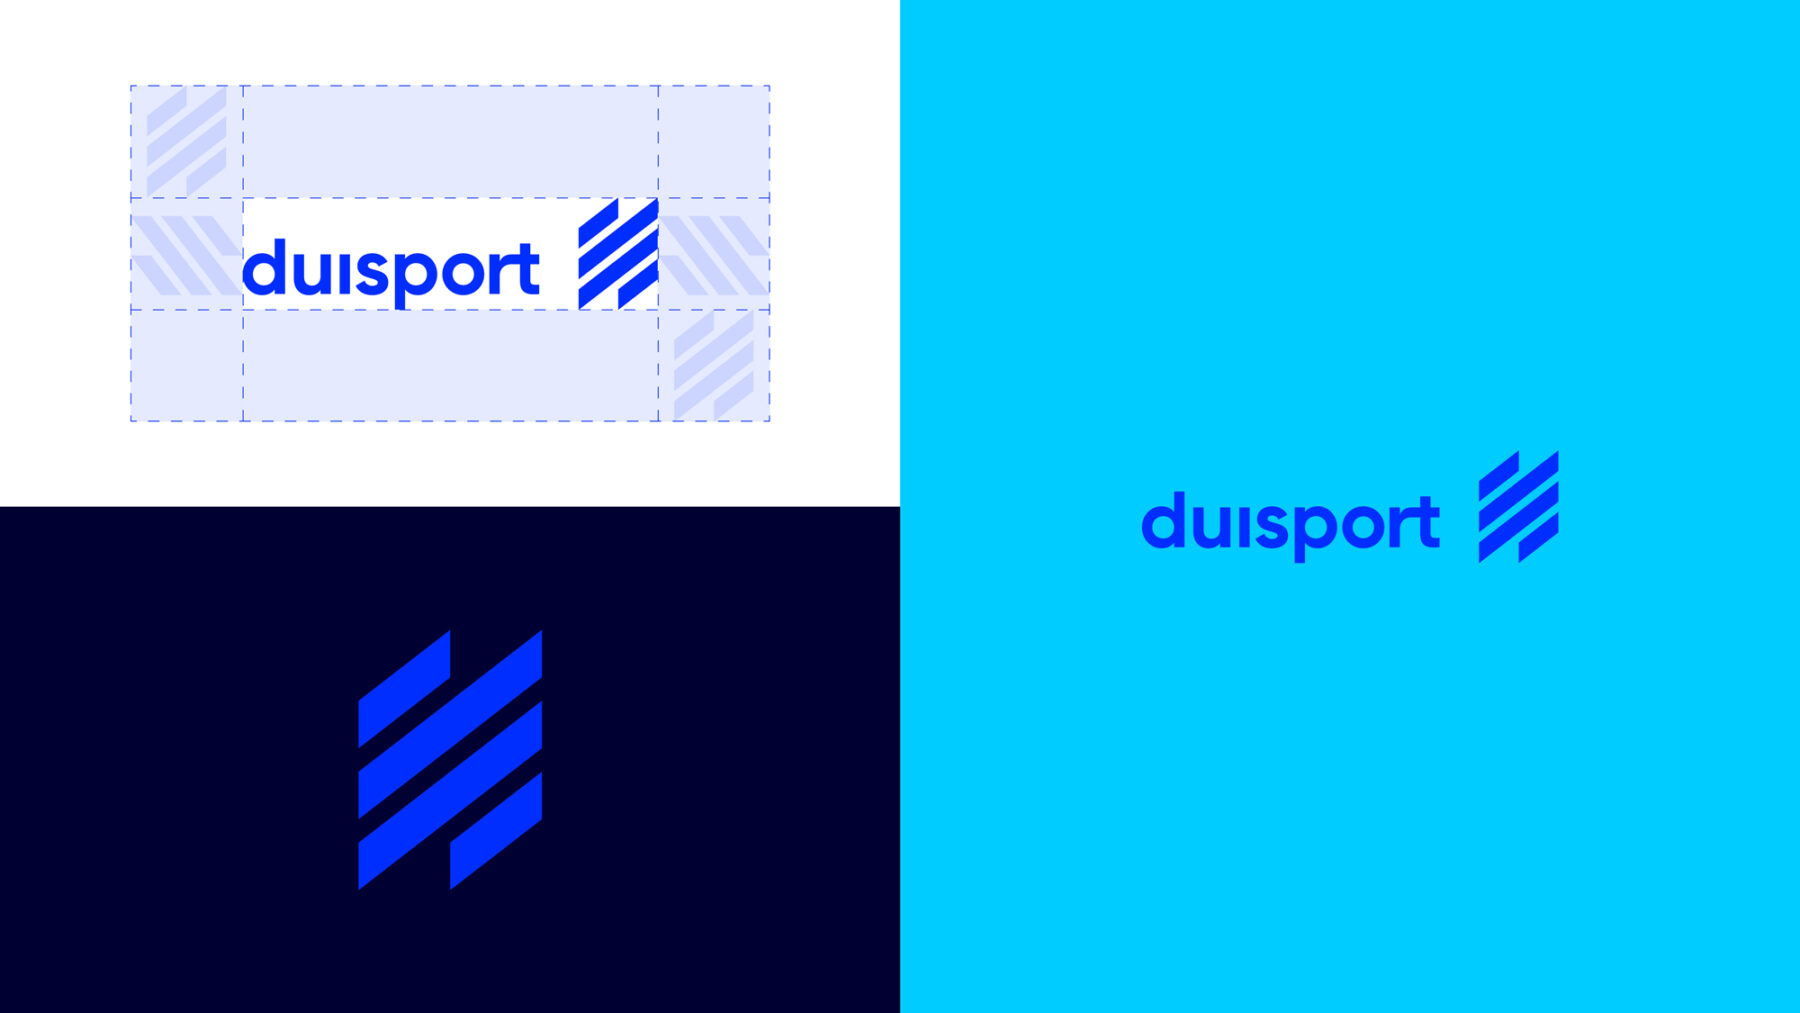 Duisport – Duisburger Hafen AG (3)